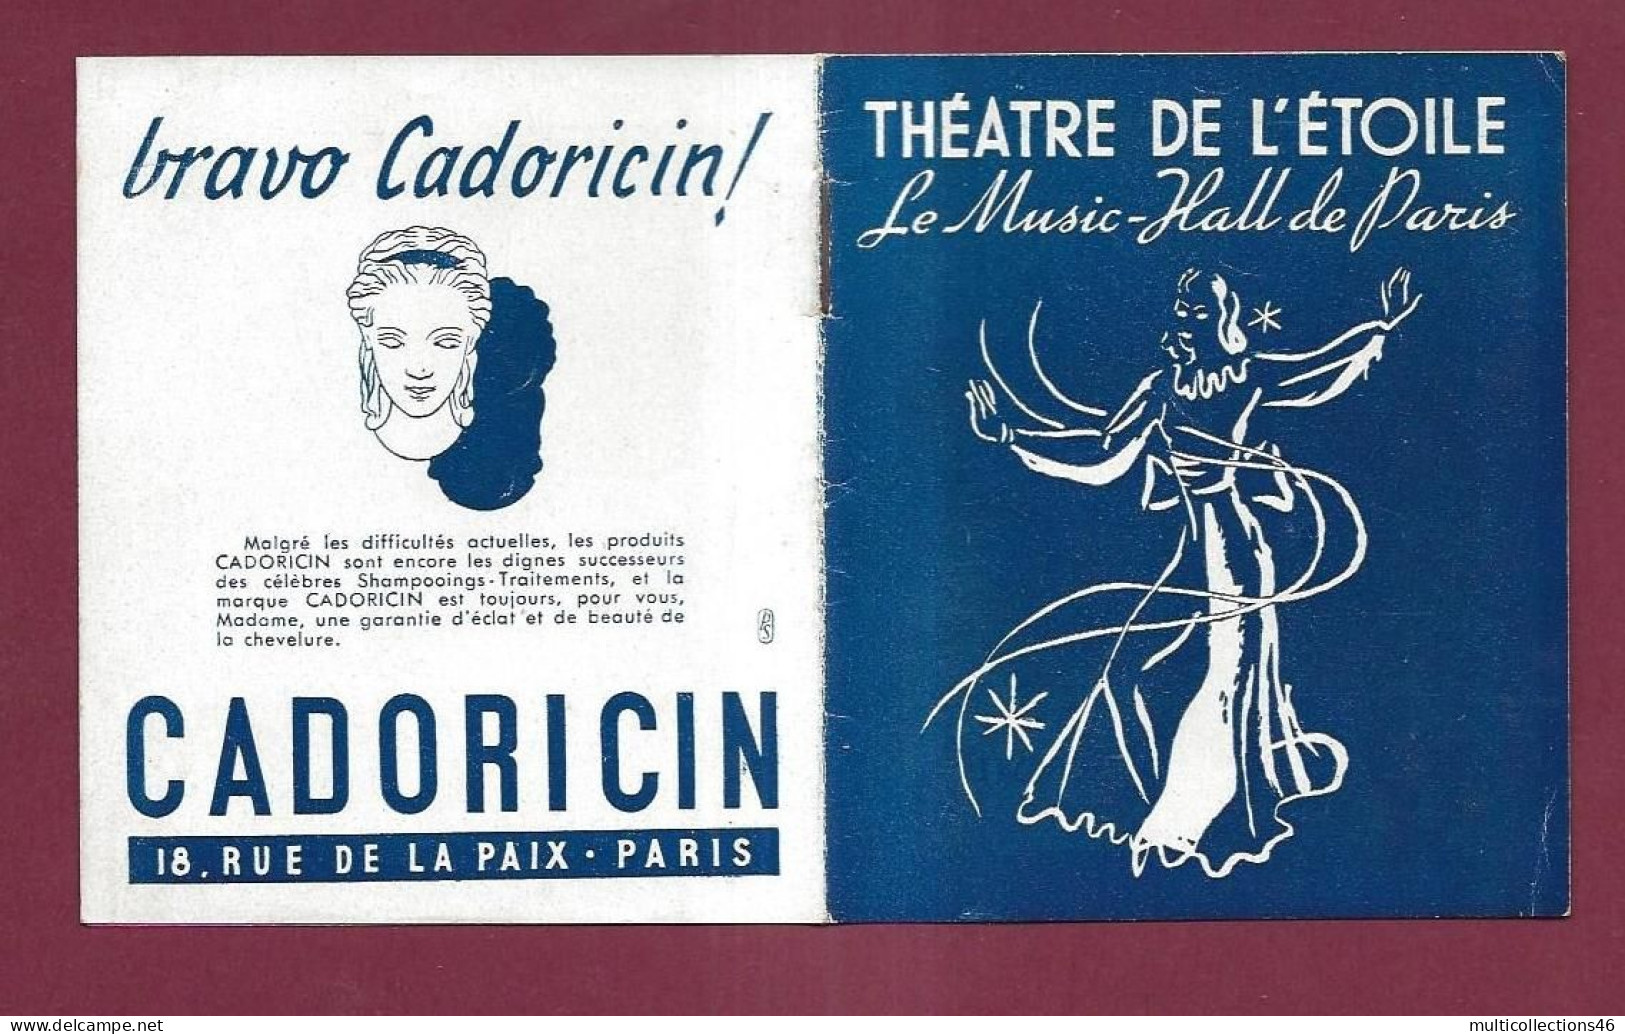 150524A - PROGRAMME THEATRE DE L'ETOILE - Music Hall 1945 46 EDITH PIAF Orchestre Etoile Acrobate Les Bel Air - Programmes